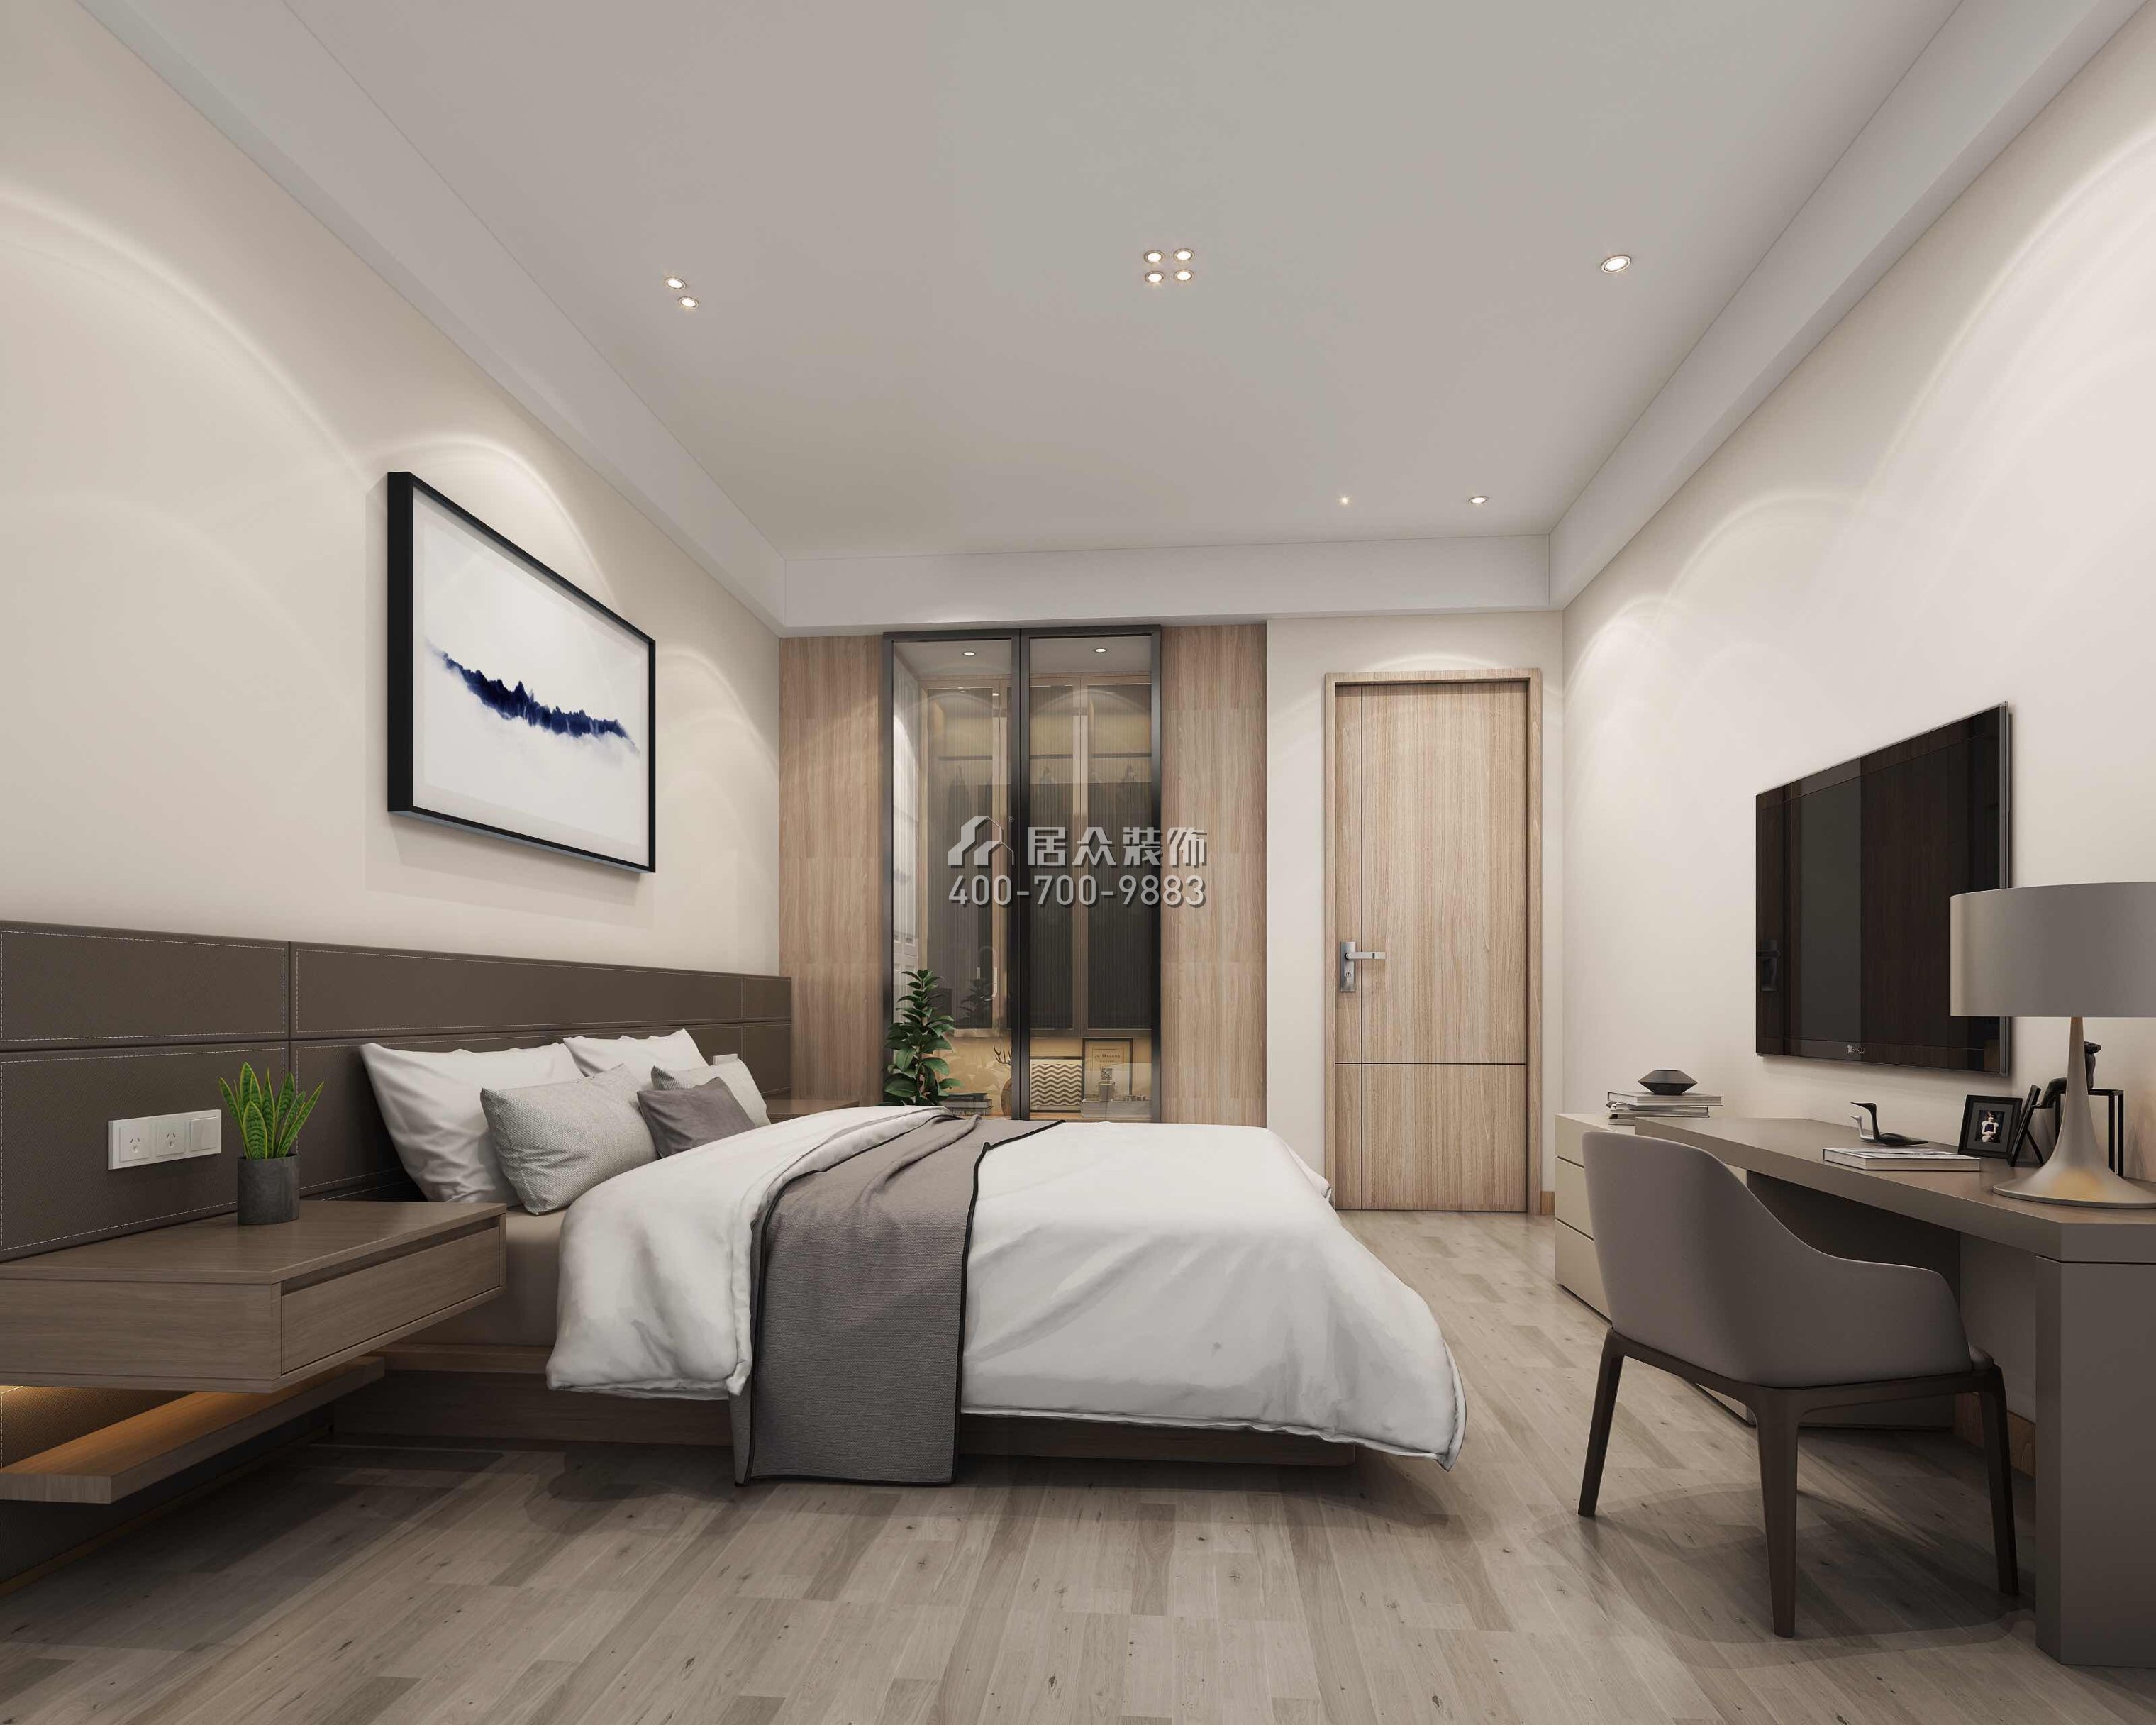 丰泰观山420平方米现代简约风格别墅户型卧室装修效果图